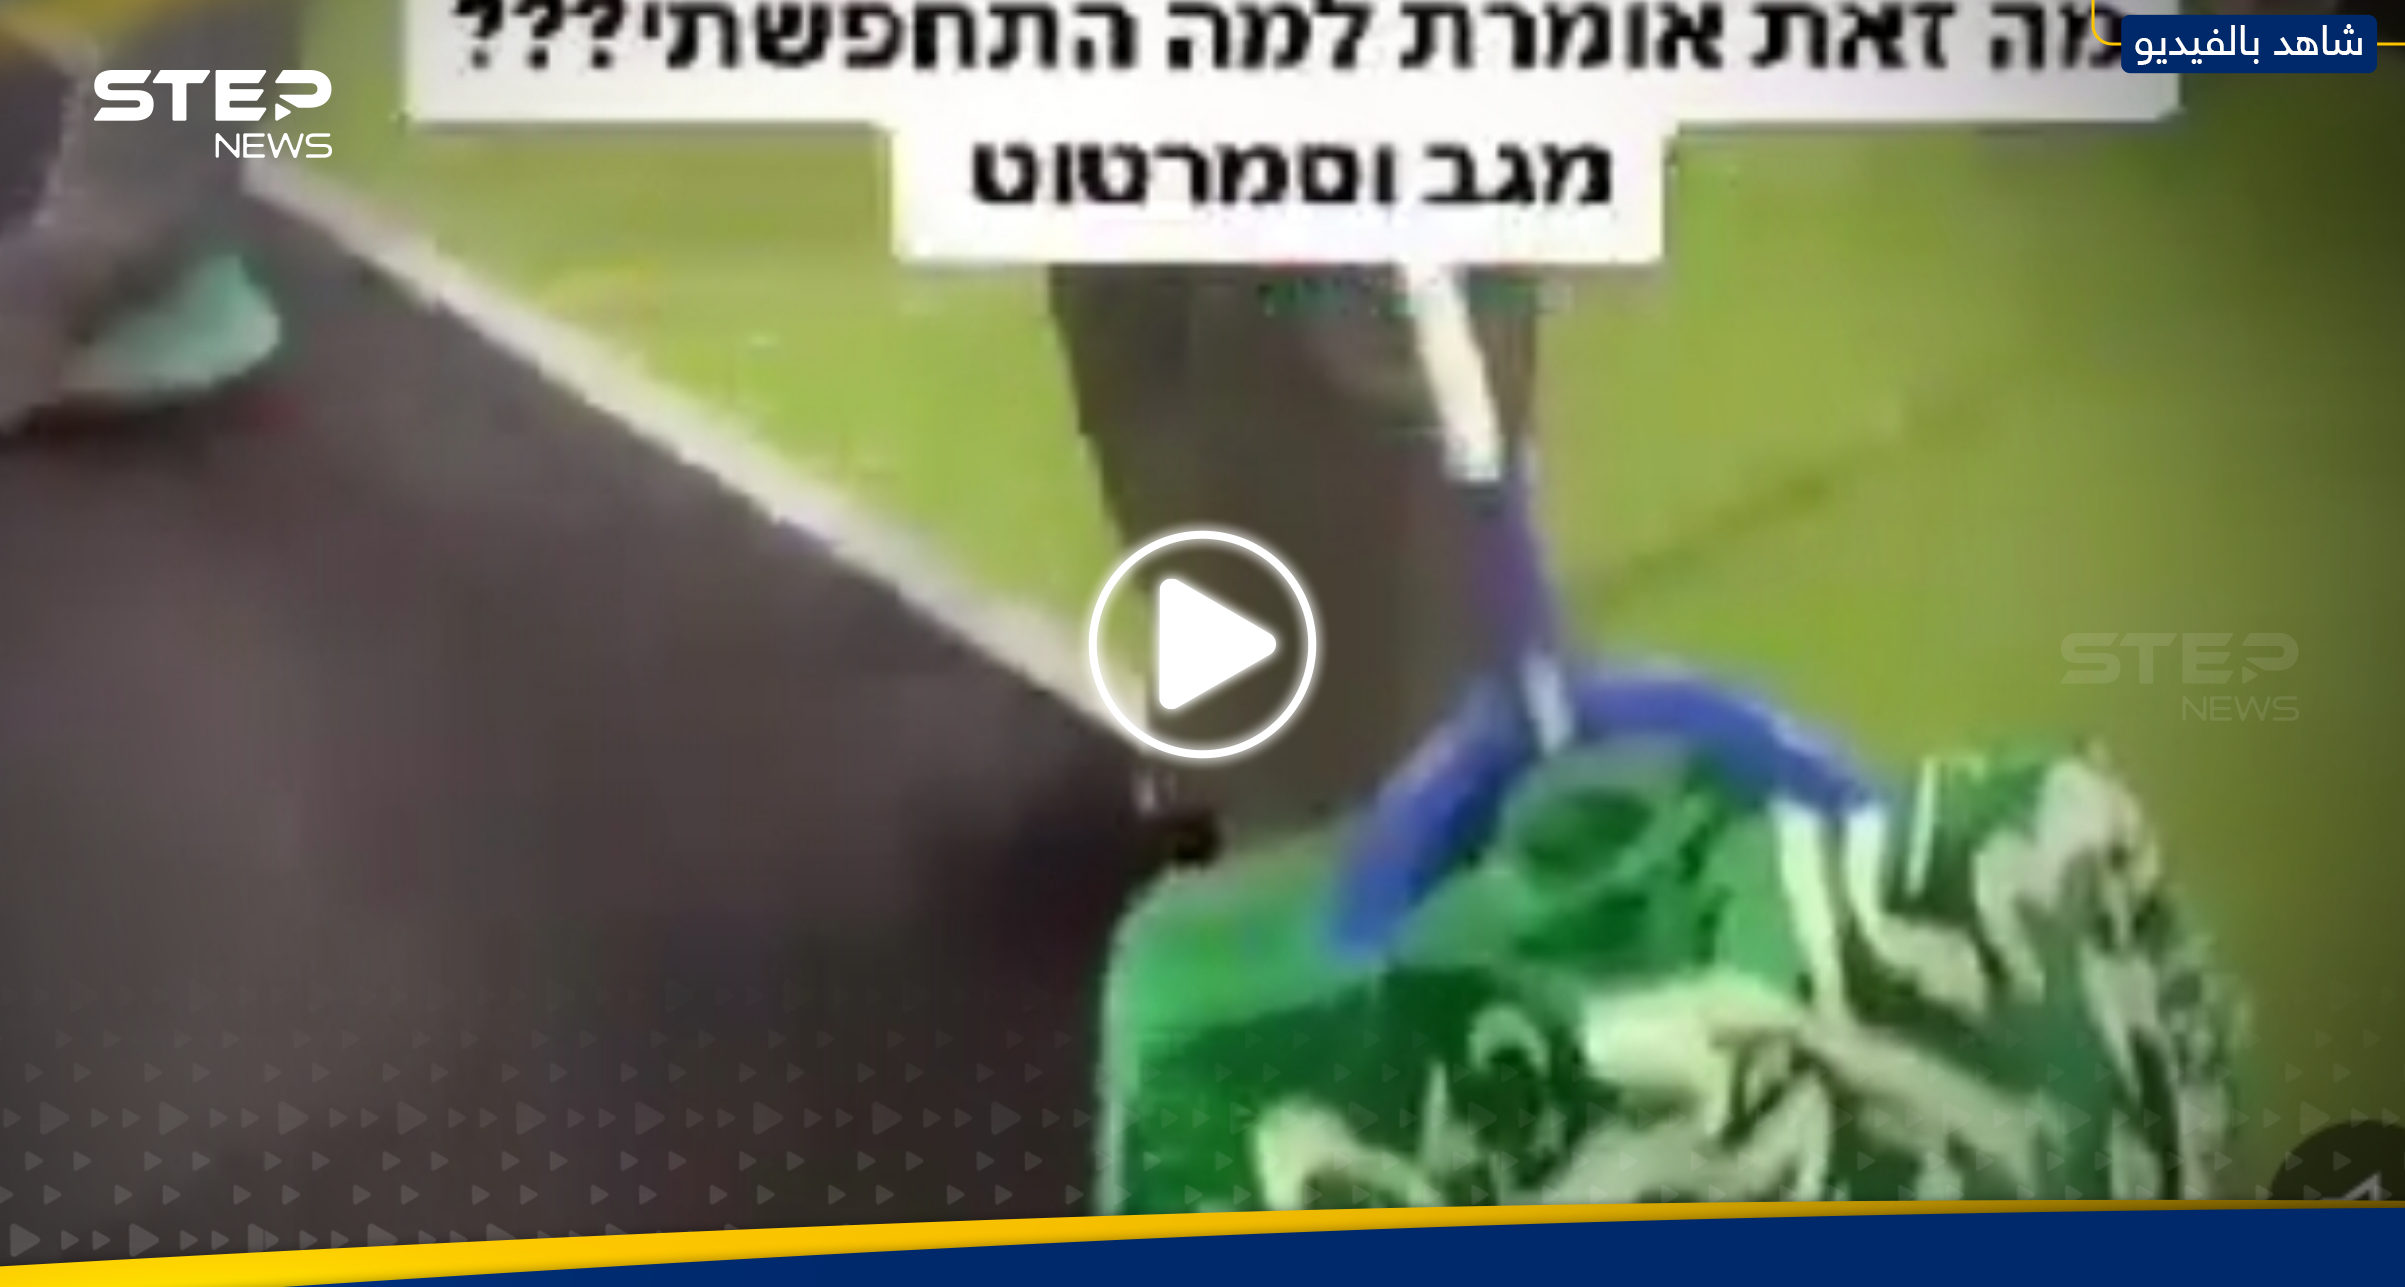 بالفيديو|| إسرائيلي يدوس "علم السعودية" ويسخر منه مثيراً ردود فعل غاضبة